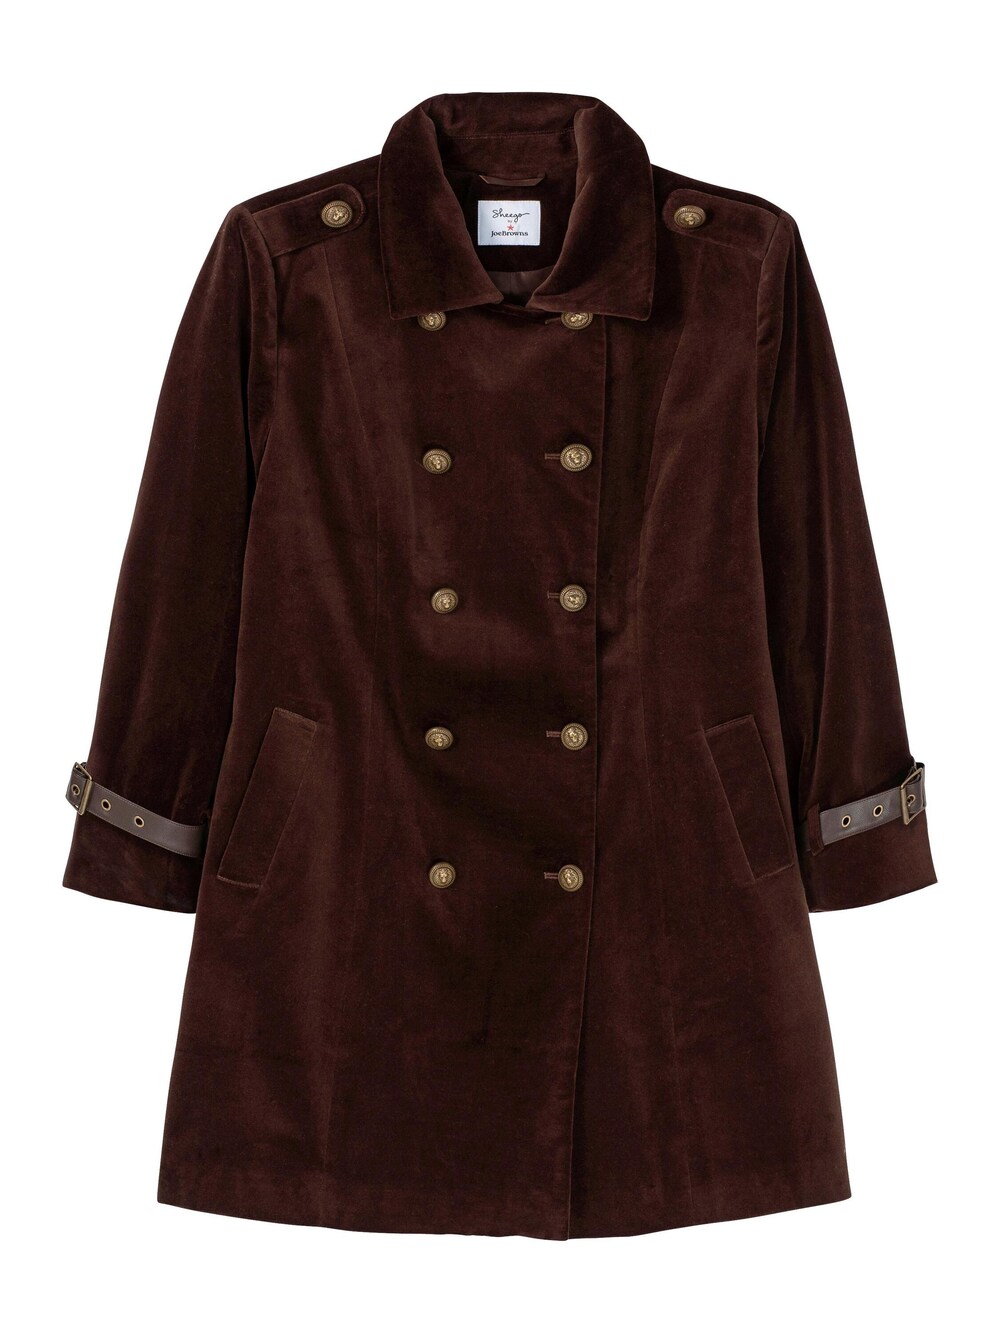 Межсезонное пальто Joe Browns, темно коричневый